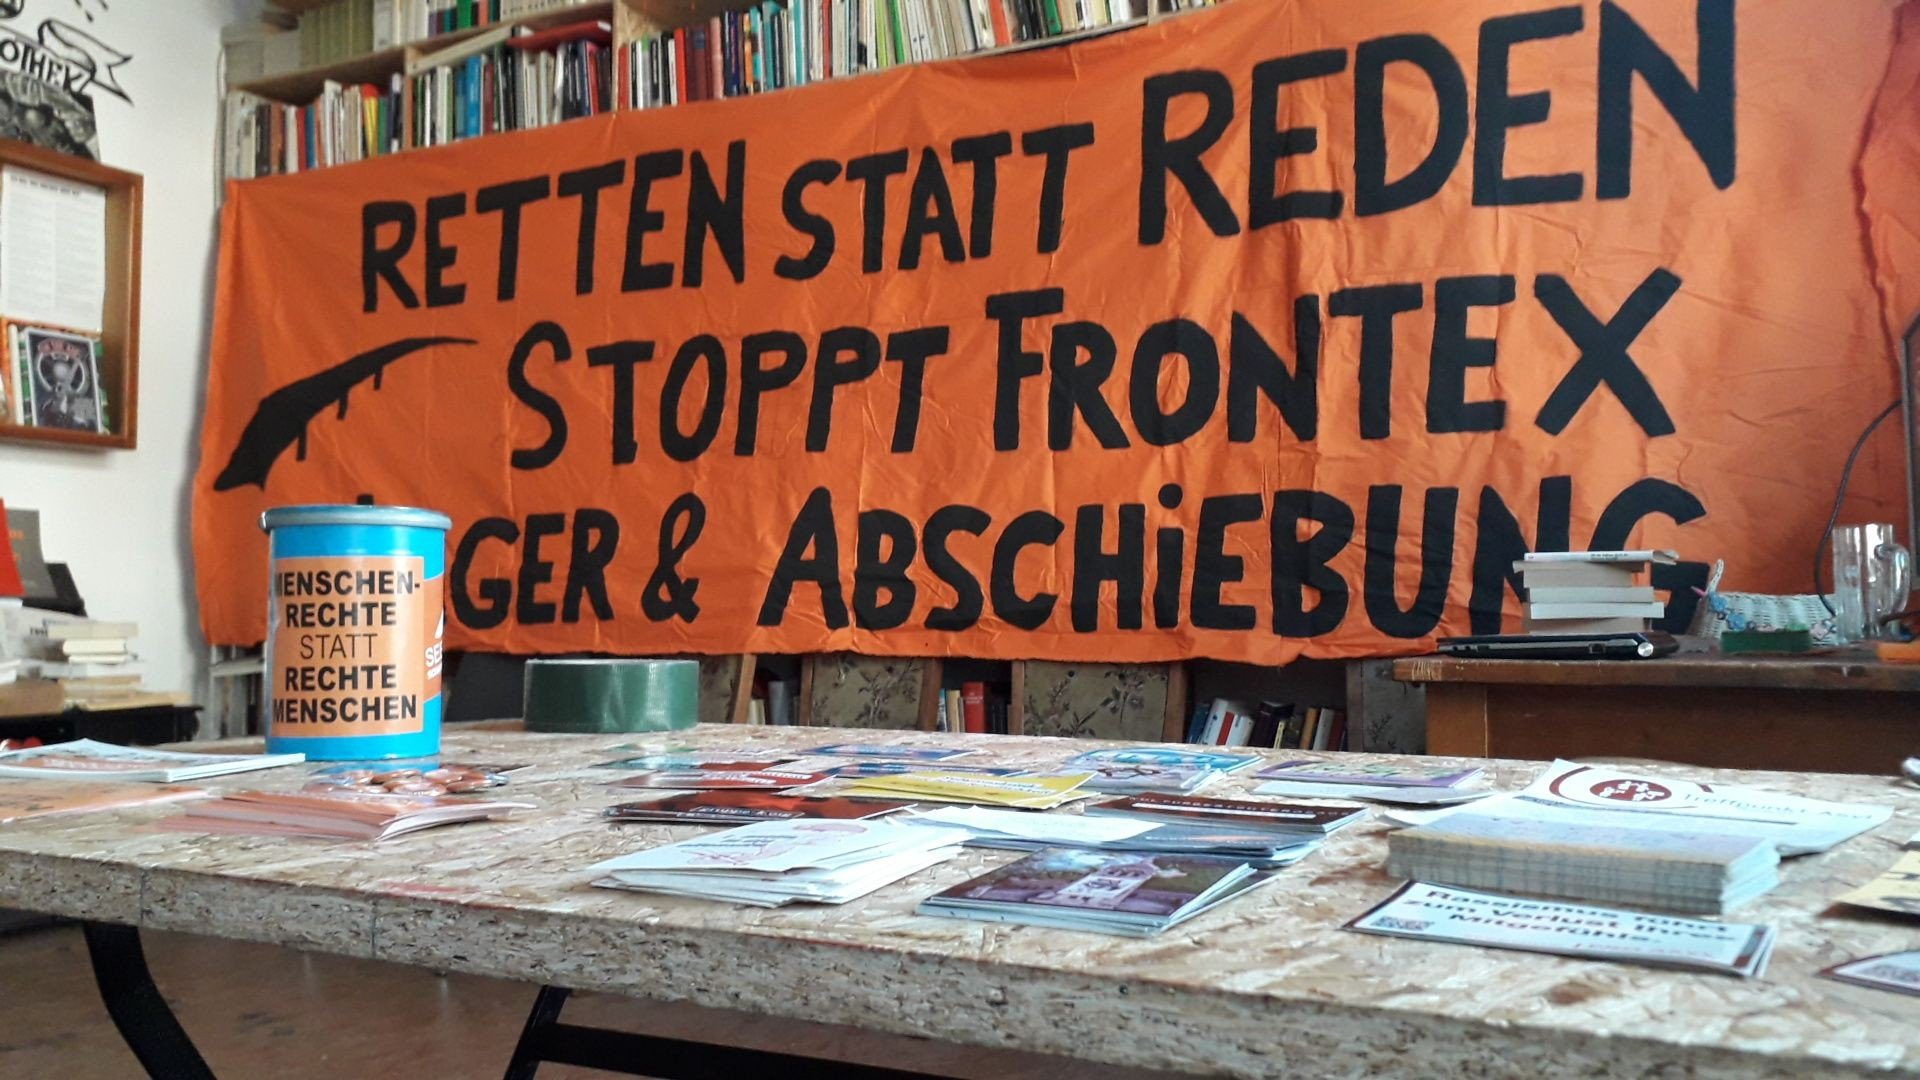 orangenes Transparent mit Aufschrift „Retten statt Reden – Stoppt Frontex, Lager & Abschiebung“, davor ein Tisch mit Infomaterialien und einer Spendenbox; hinter dem Transparent ist ein Bücherregal zu sehen (Gustav-Landauer-Bibliothek Witten)